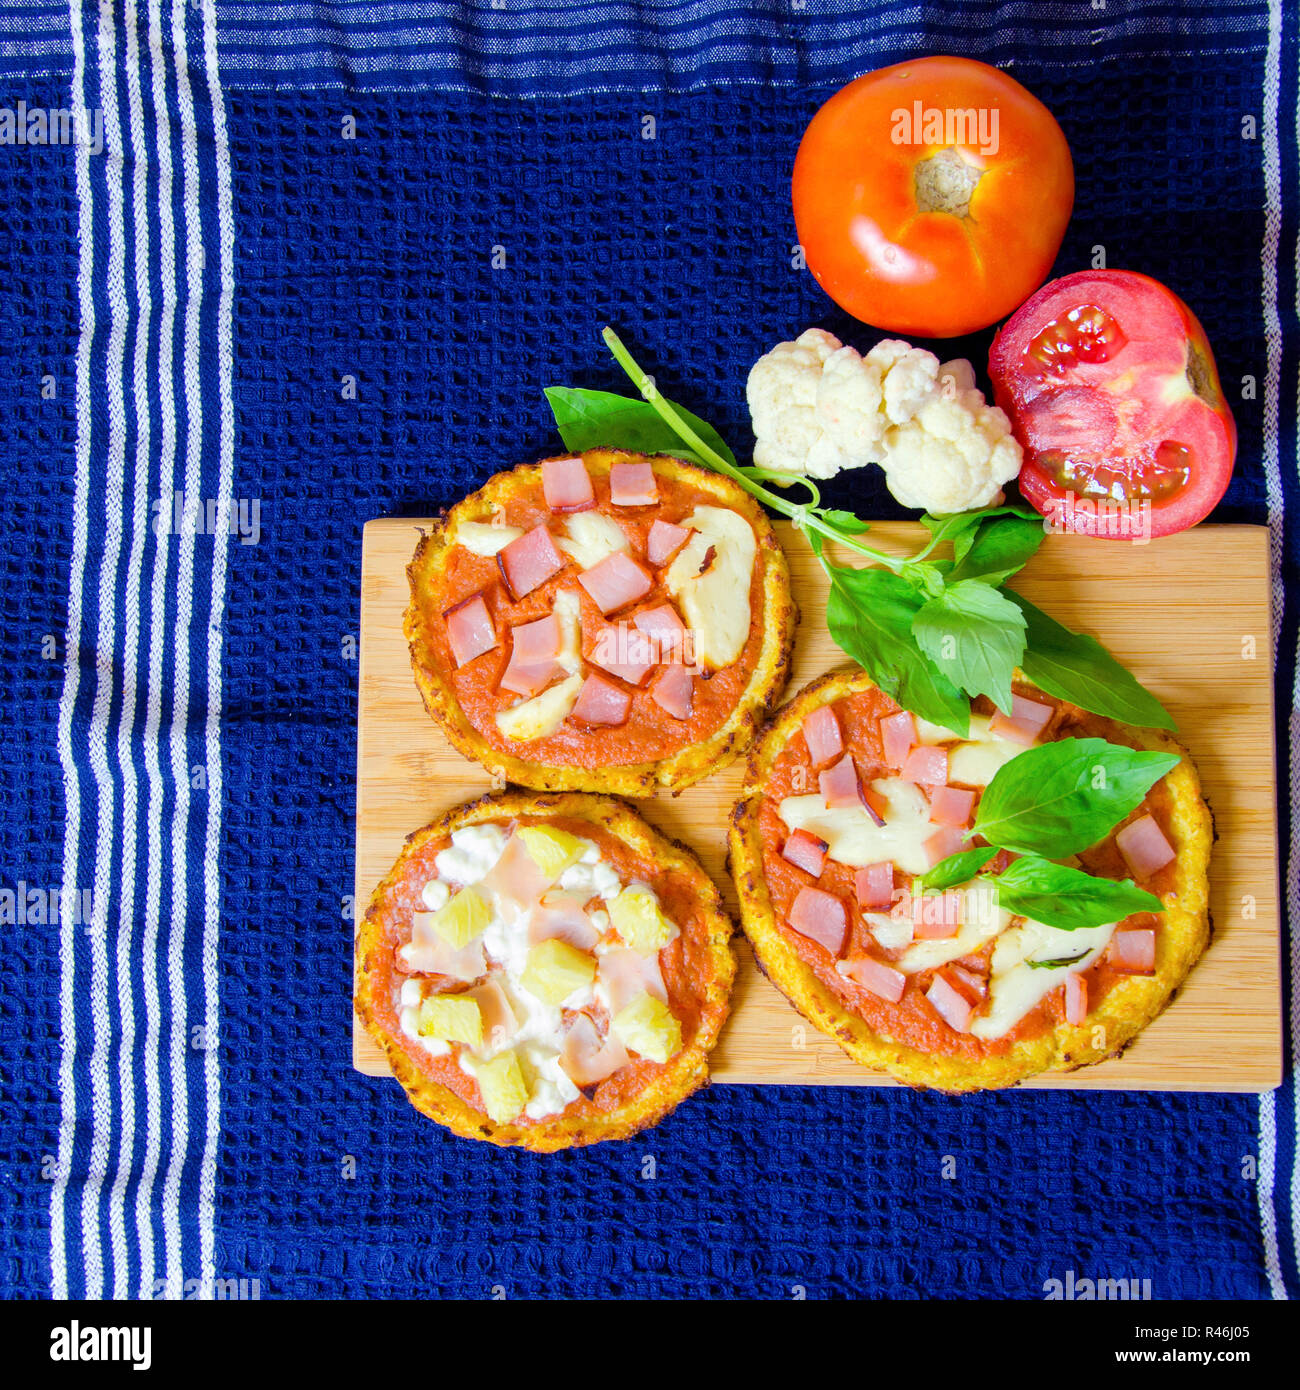 Cauliflower pizza Stock Photo